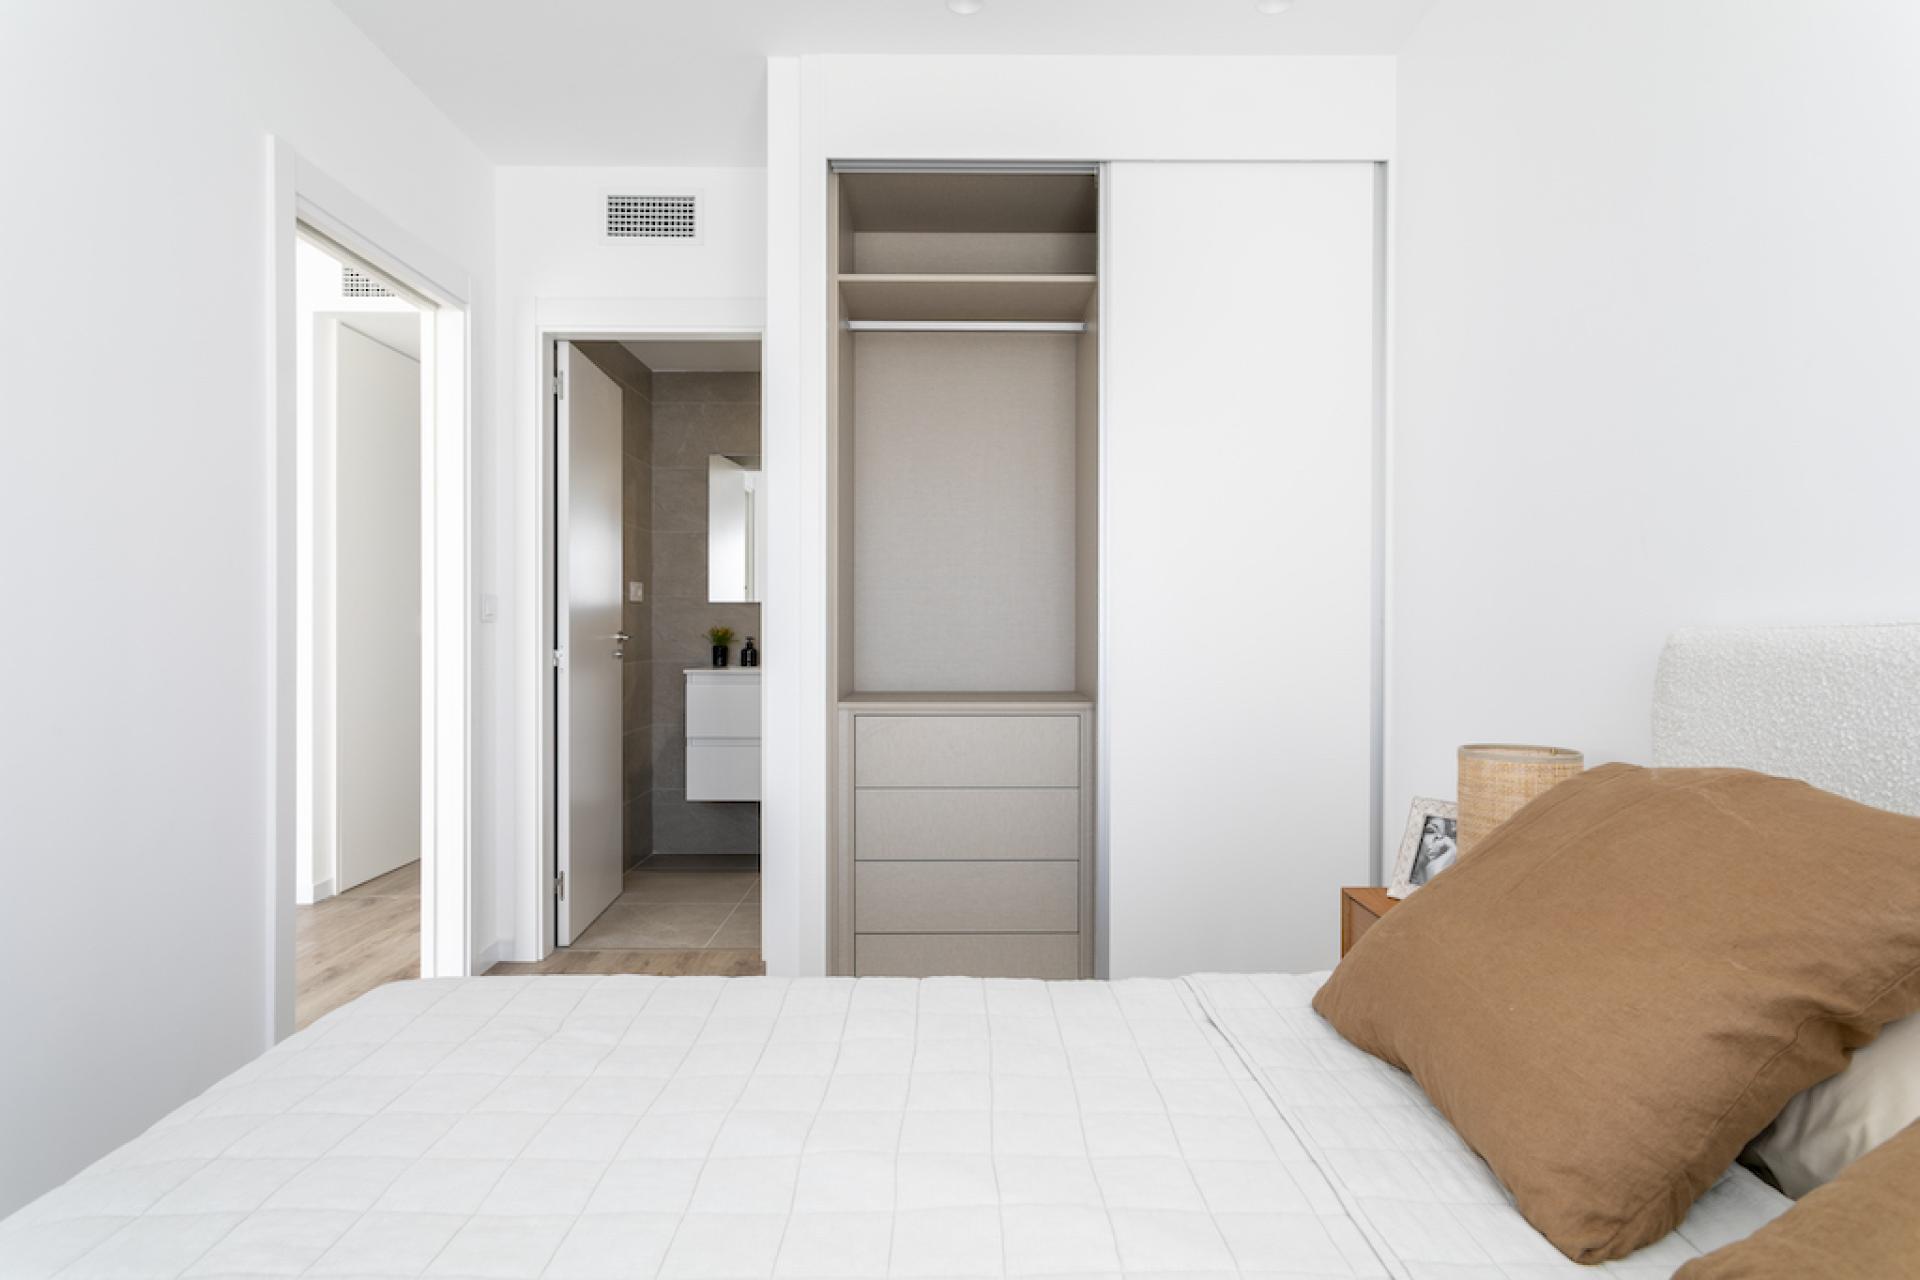 3 slaapkamer Appartement met tuin in Gran Alacant - Nieuwbouw in Medvilla Spanje